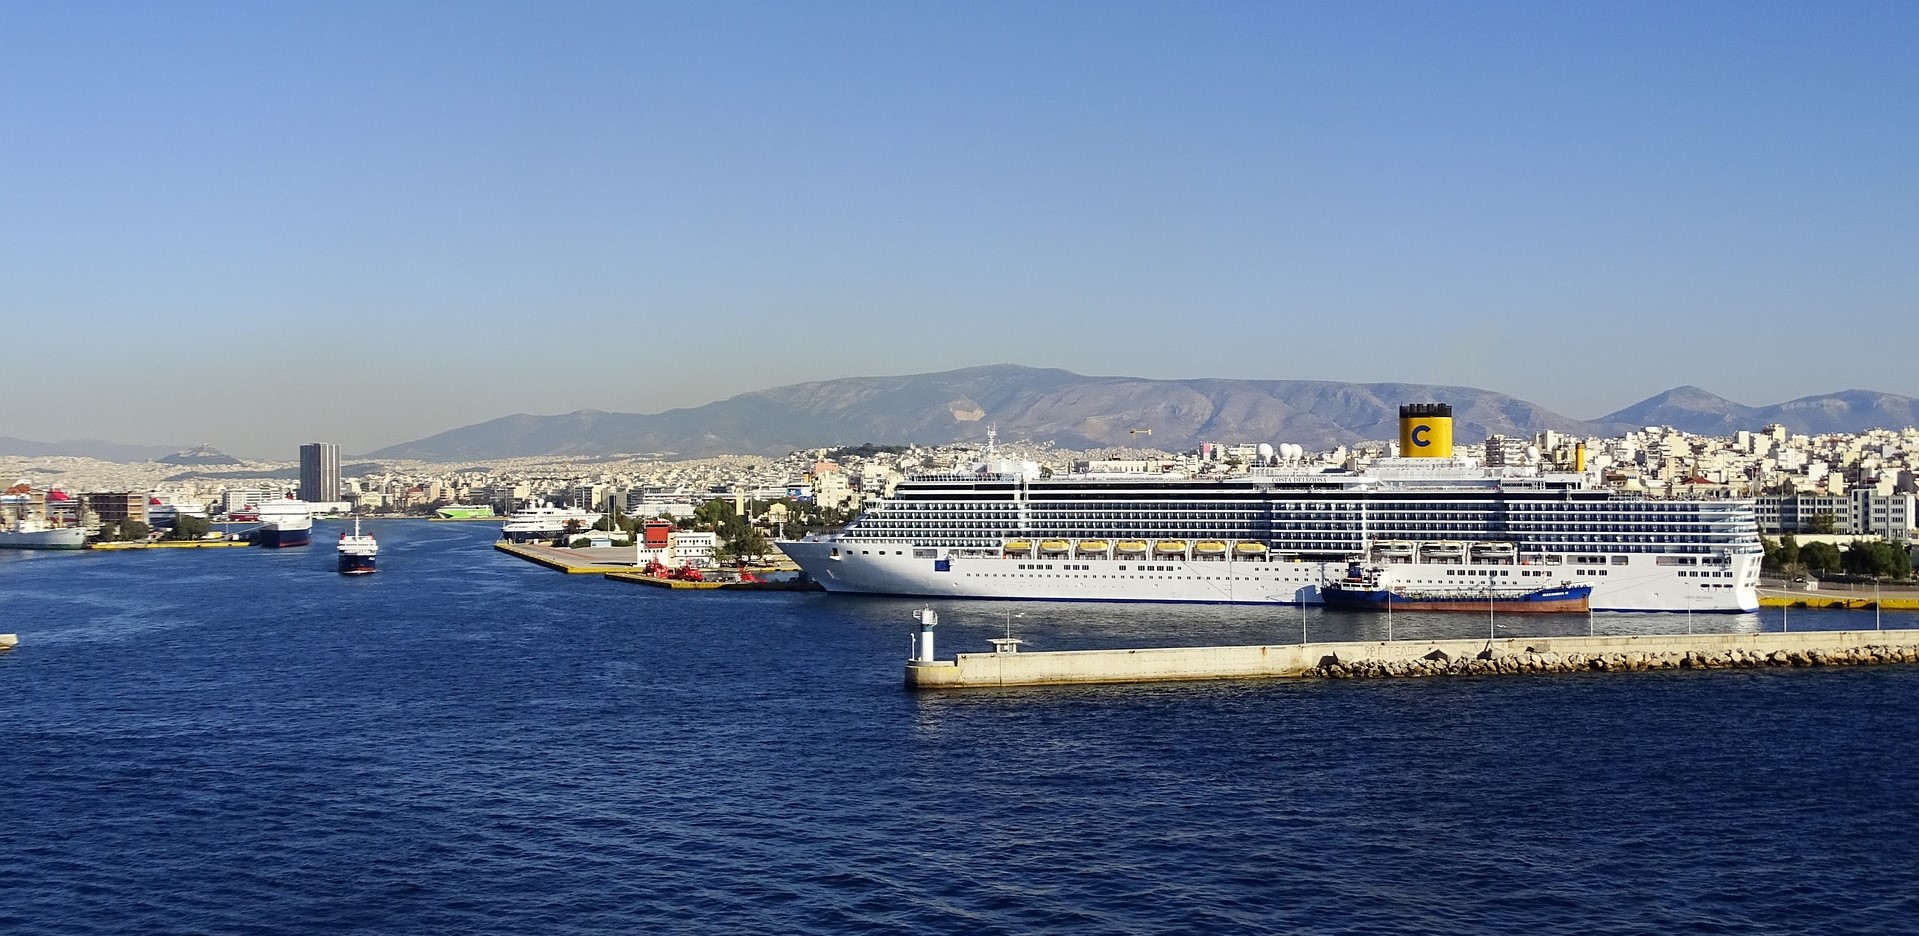 Piraeus port in Athens